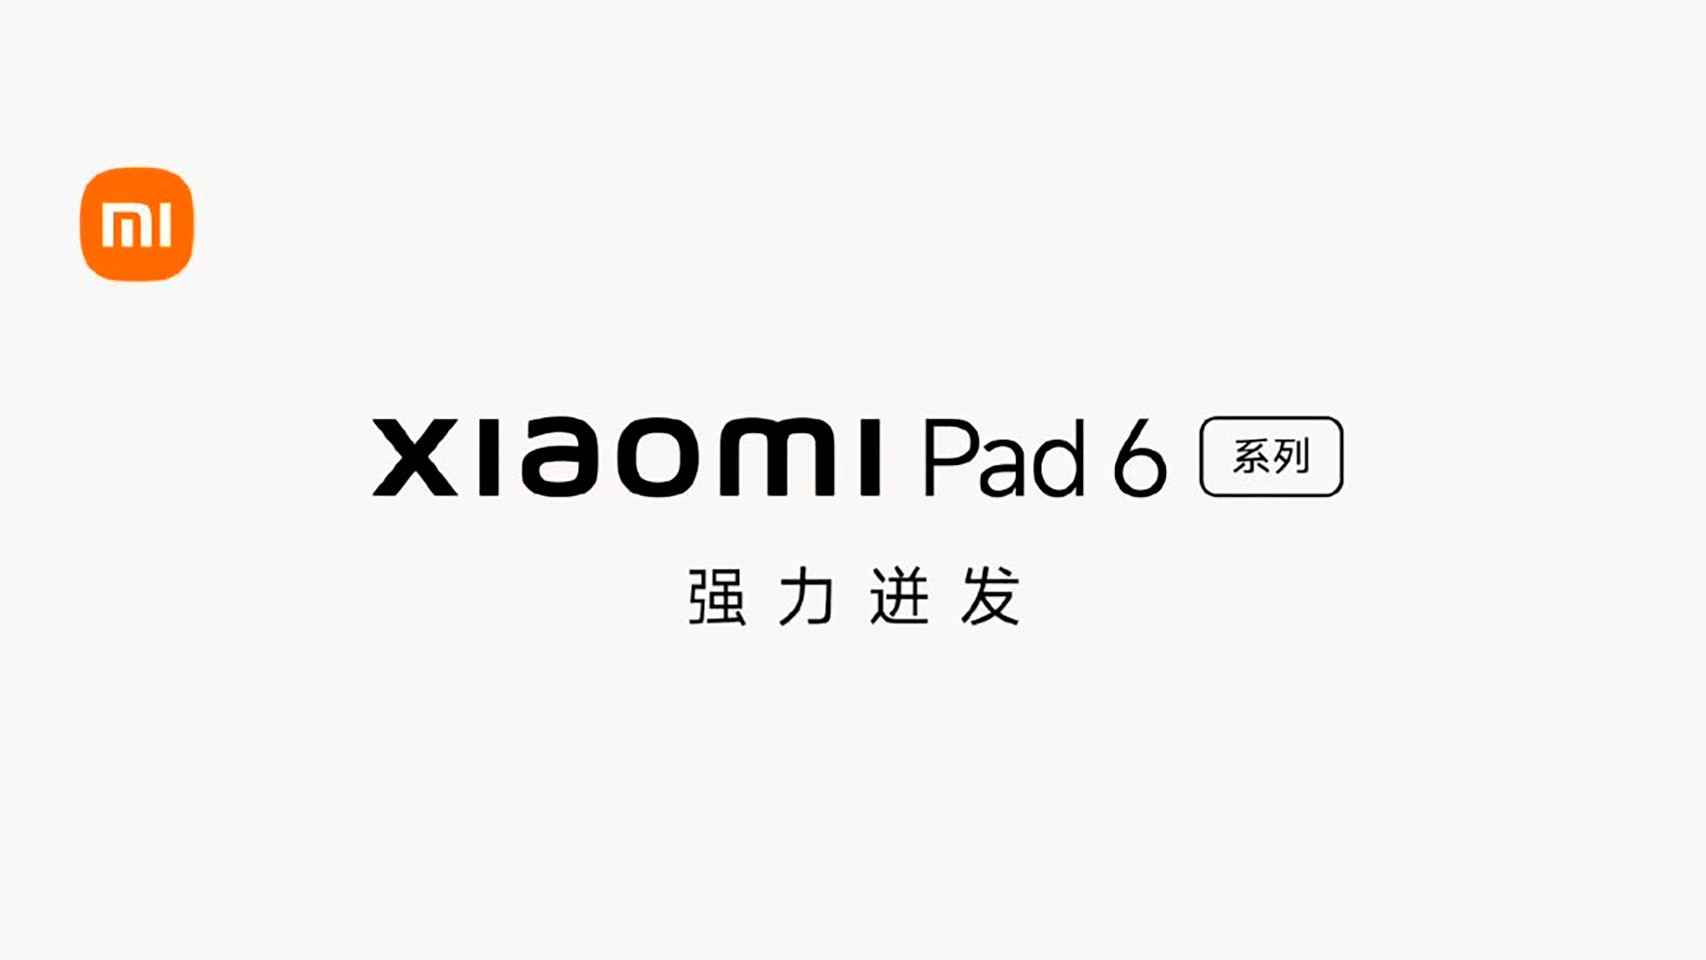 Nuevas Xiaomi Pad 6 y Xiaomi Pad 6 Pro: características, precio y